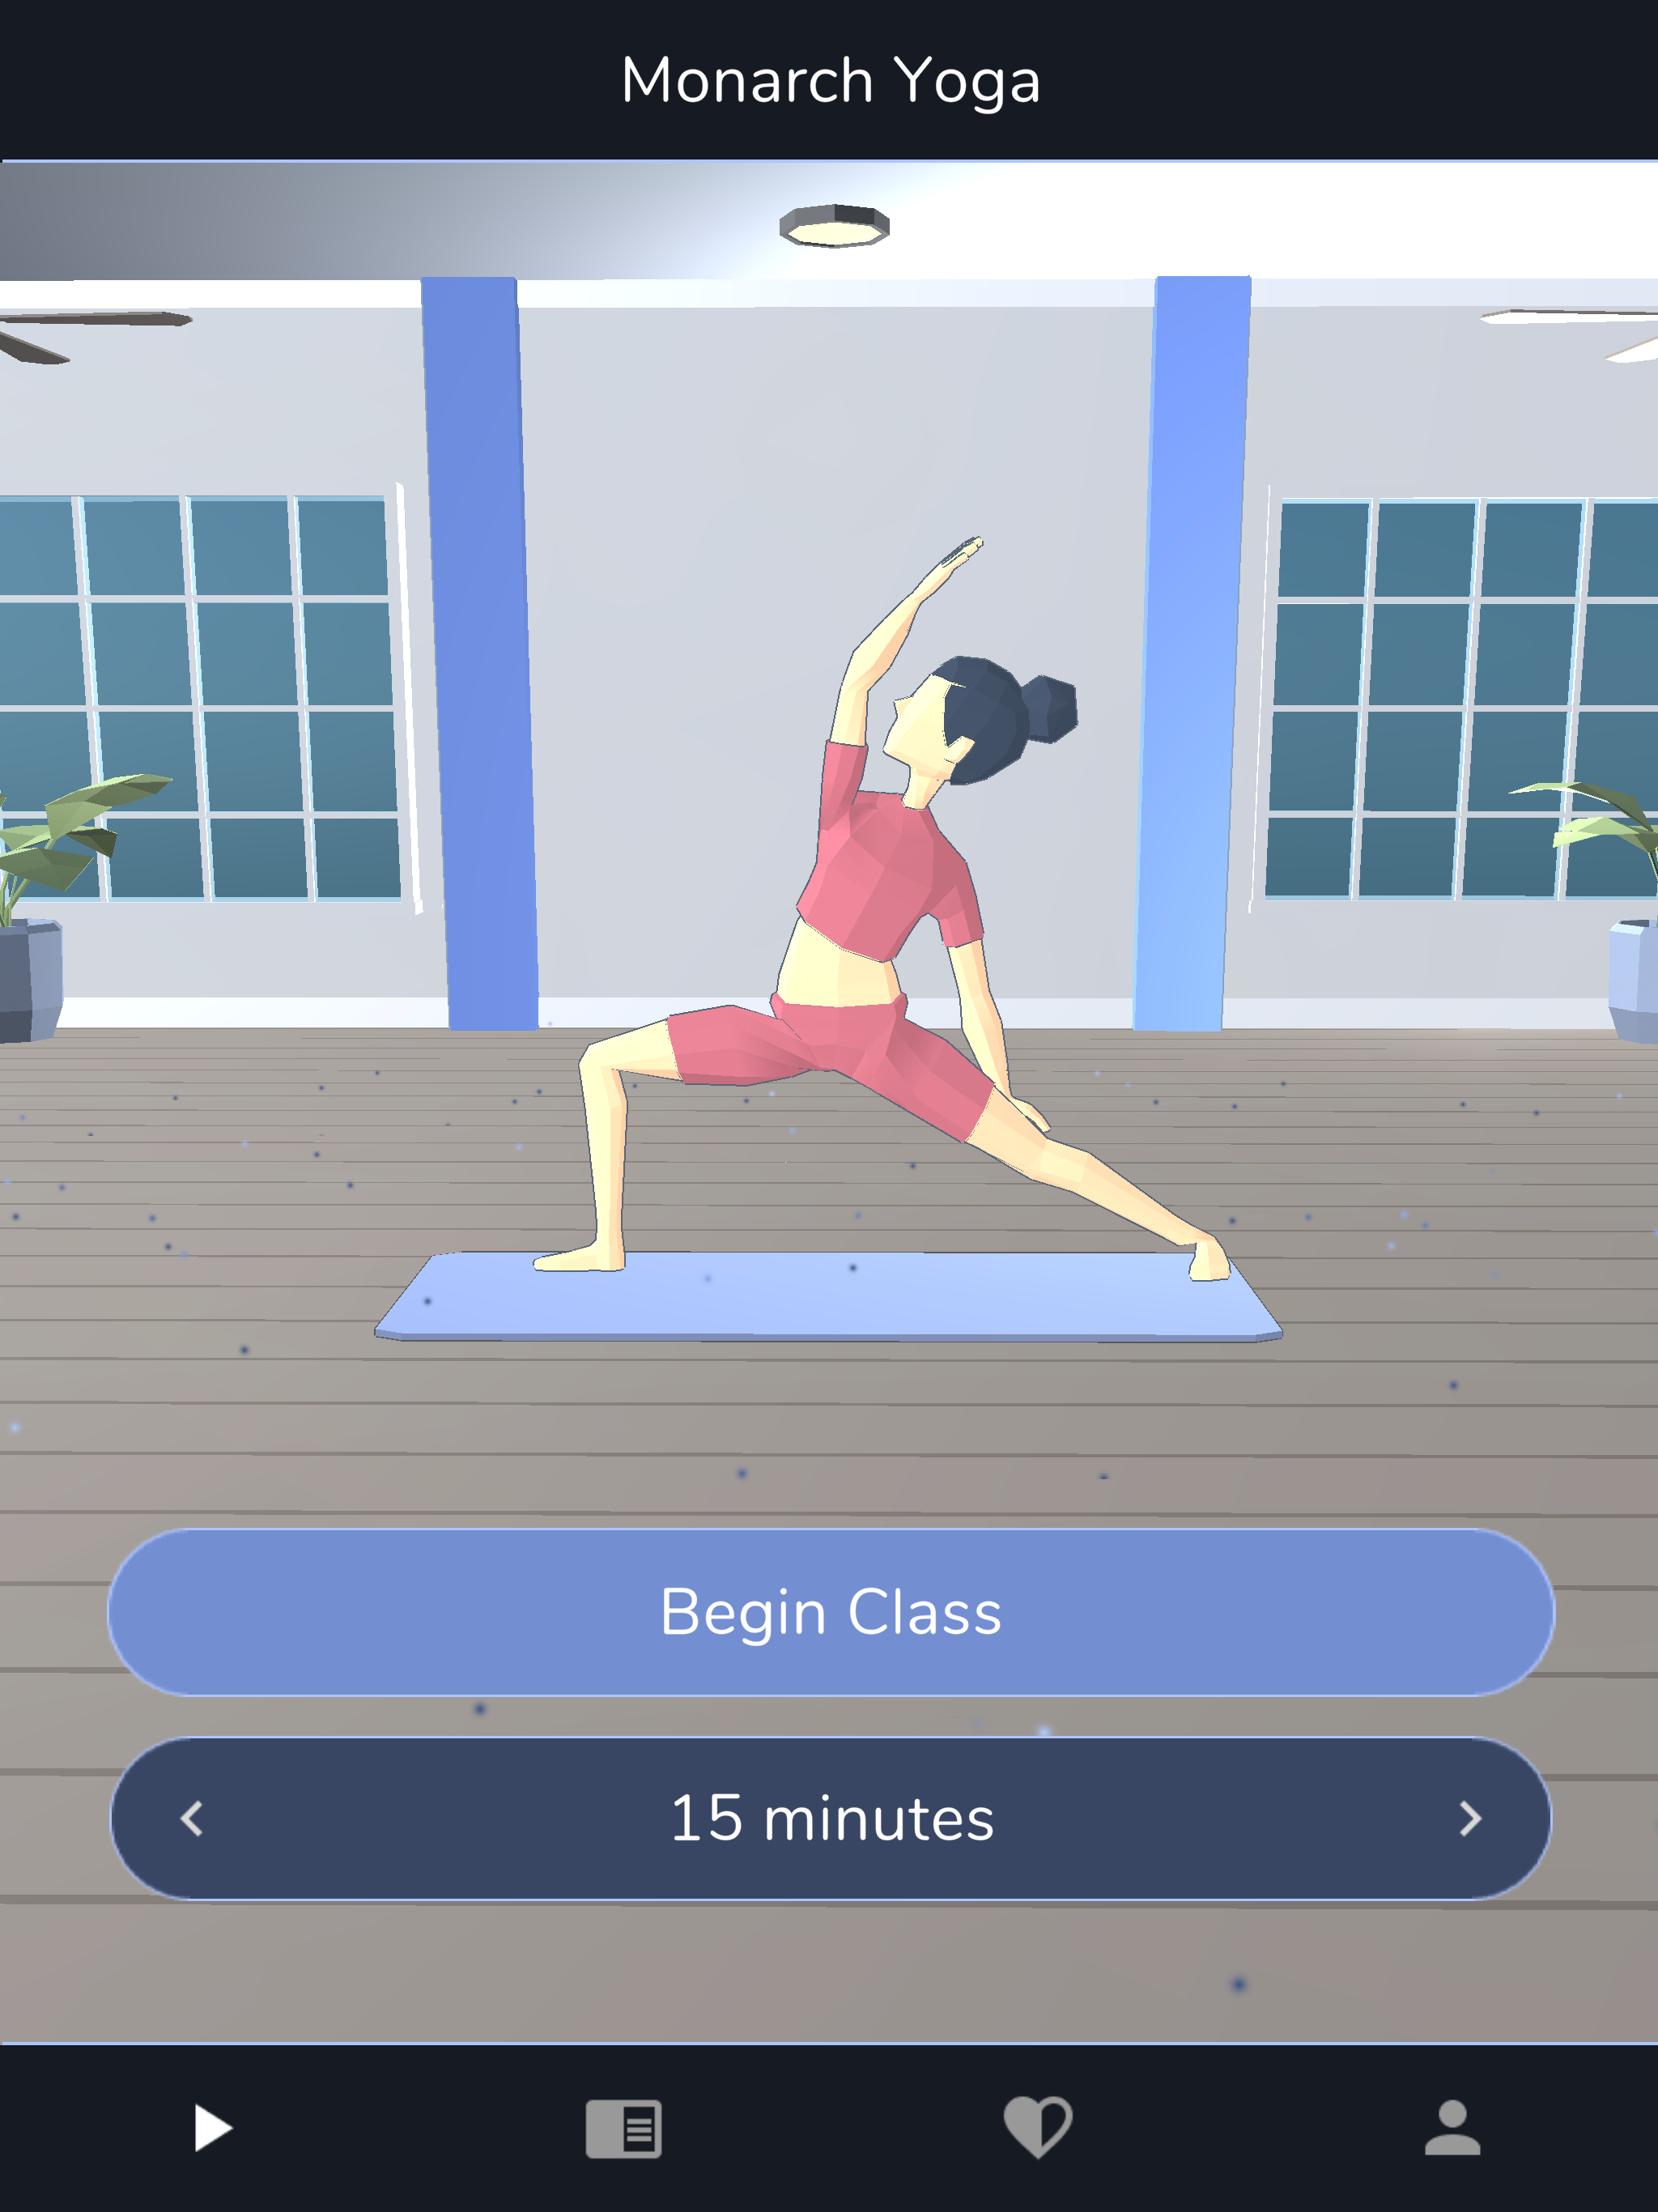 Monarch Yoga on iPad